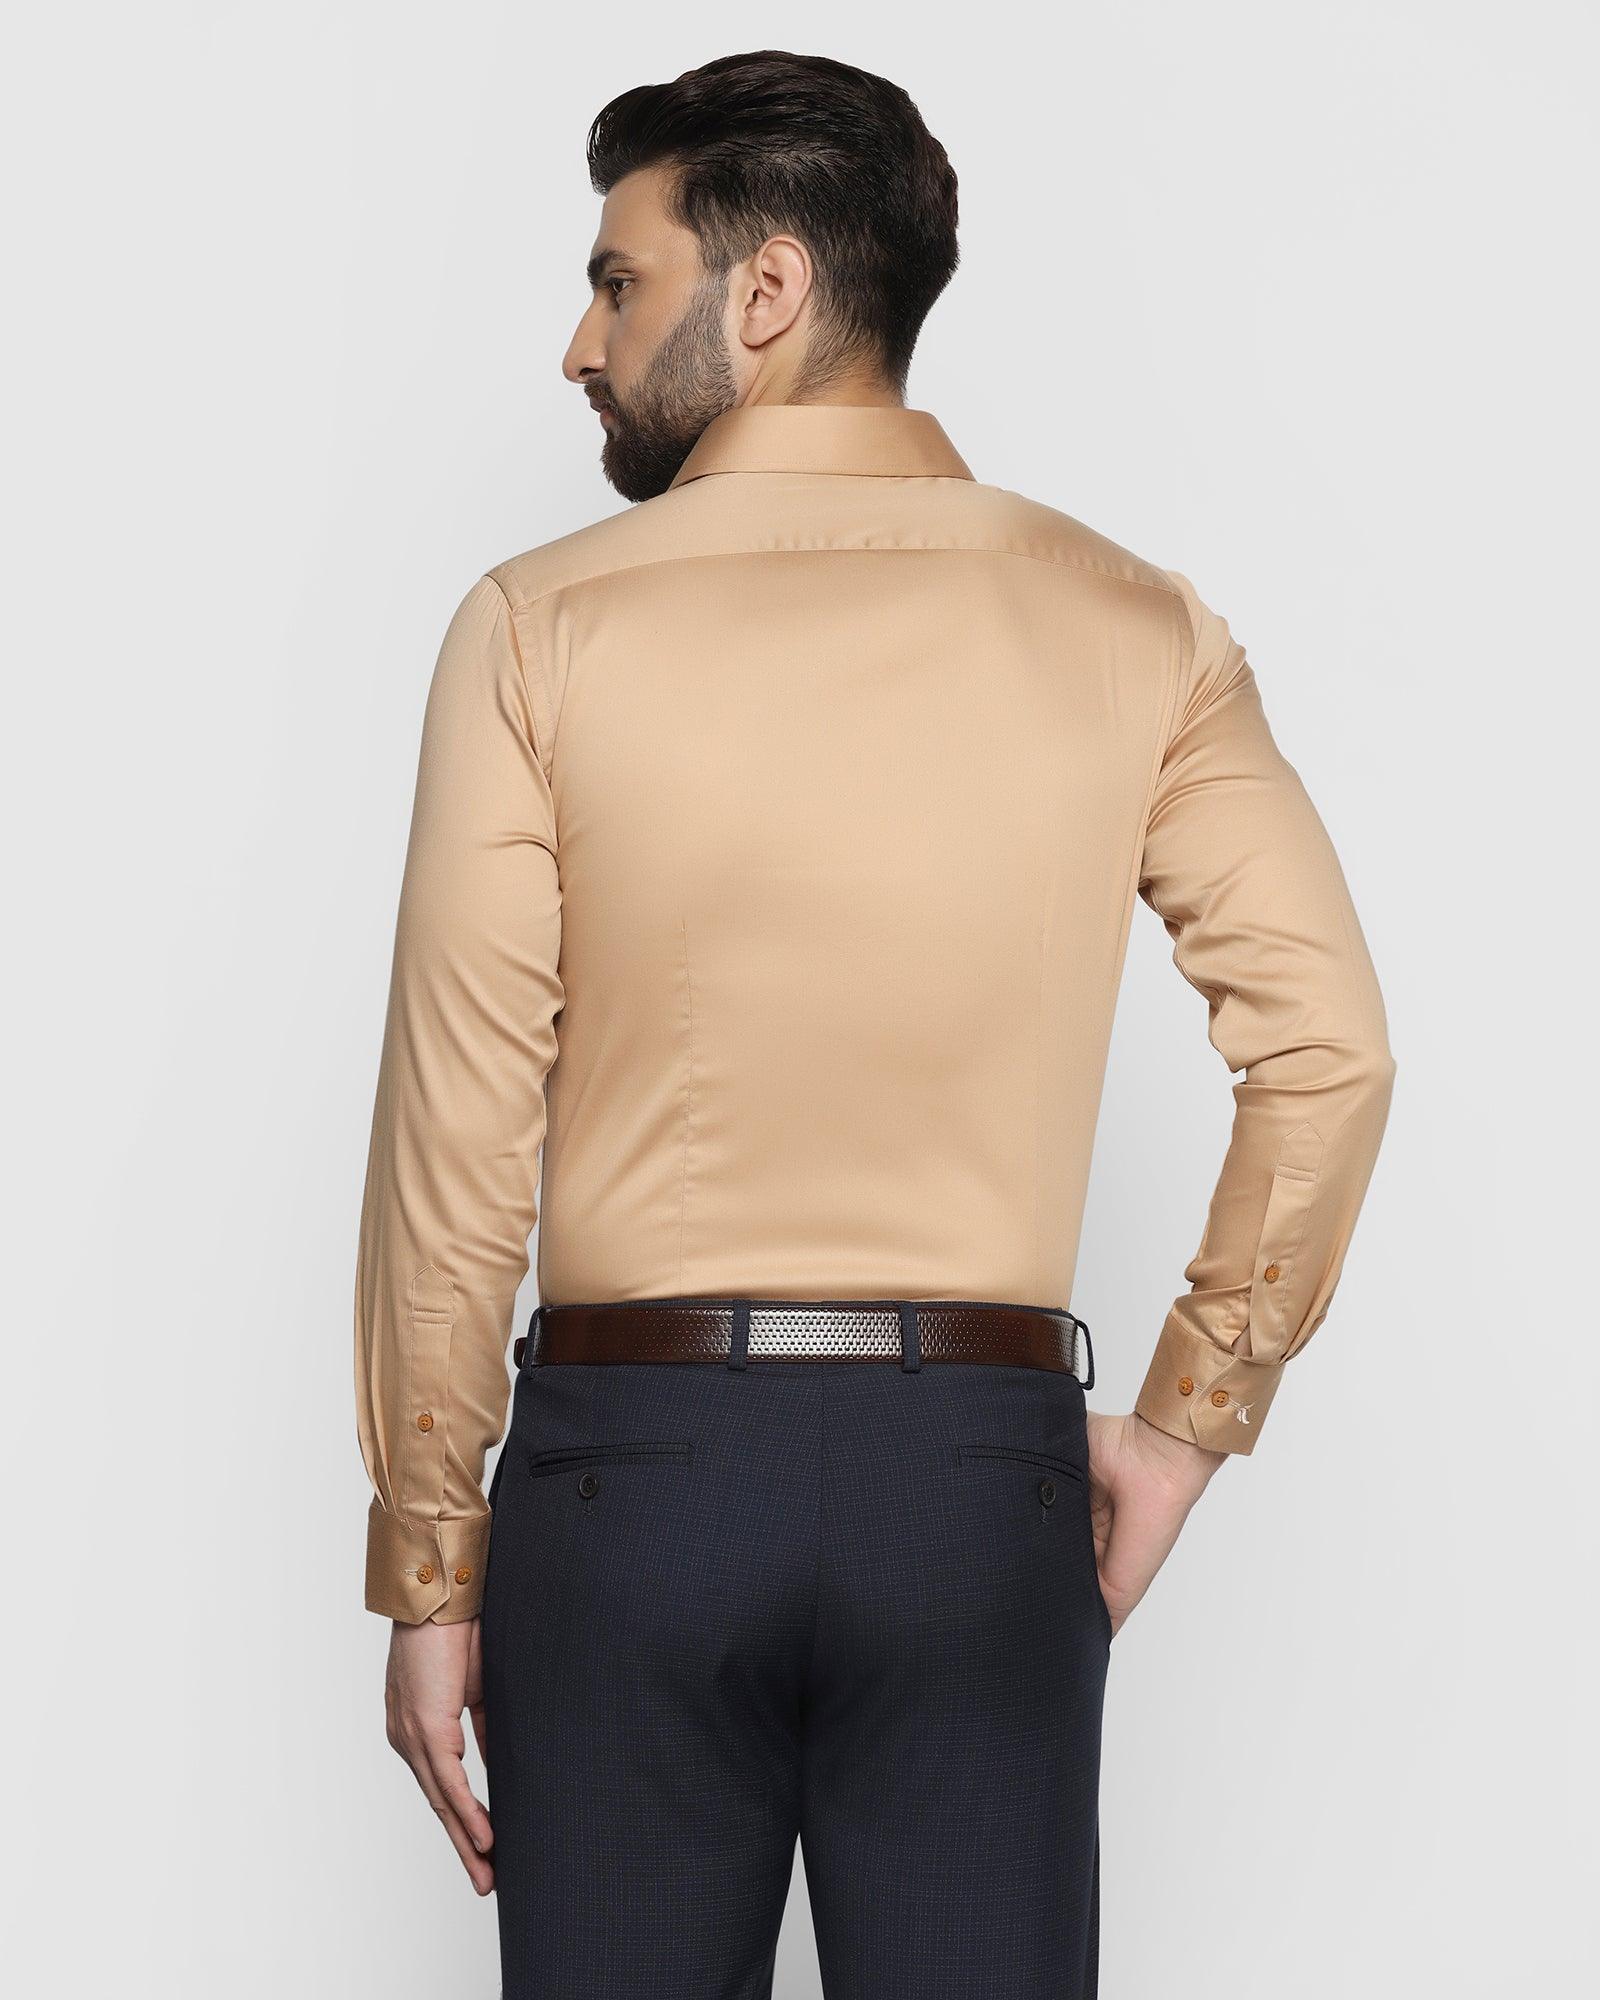 Formal Golden Solid Shirt - Manuel